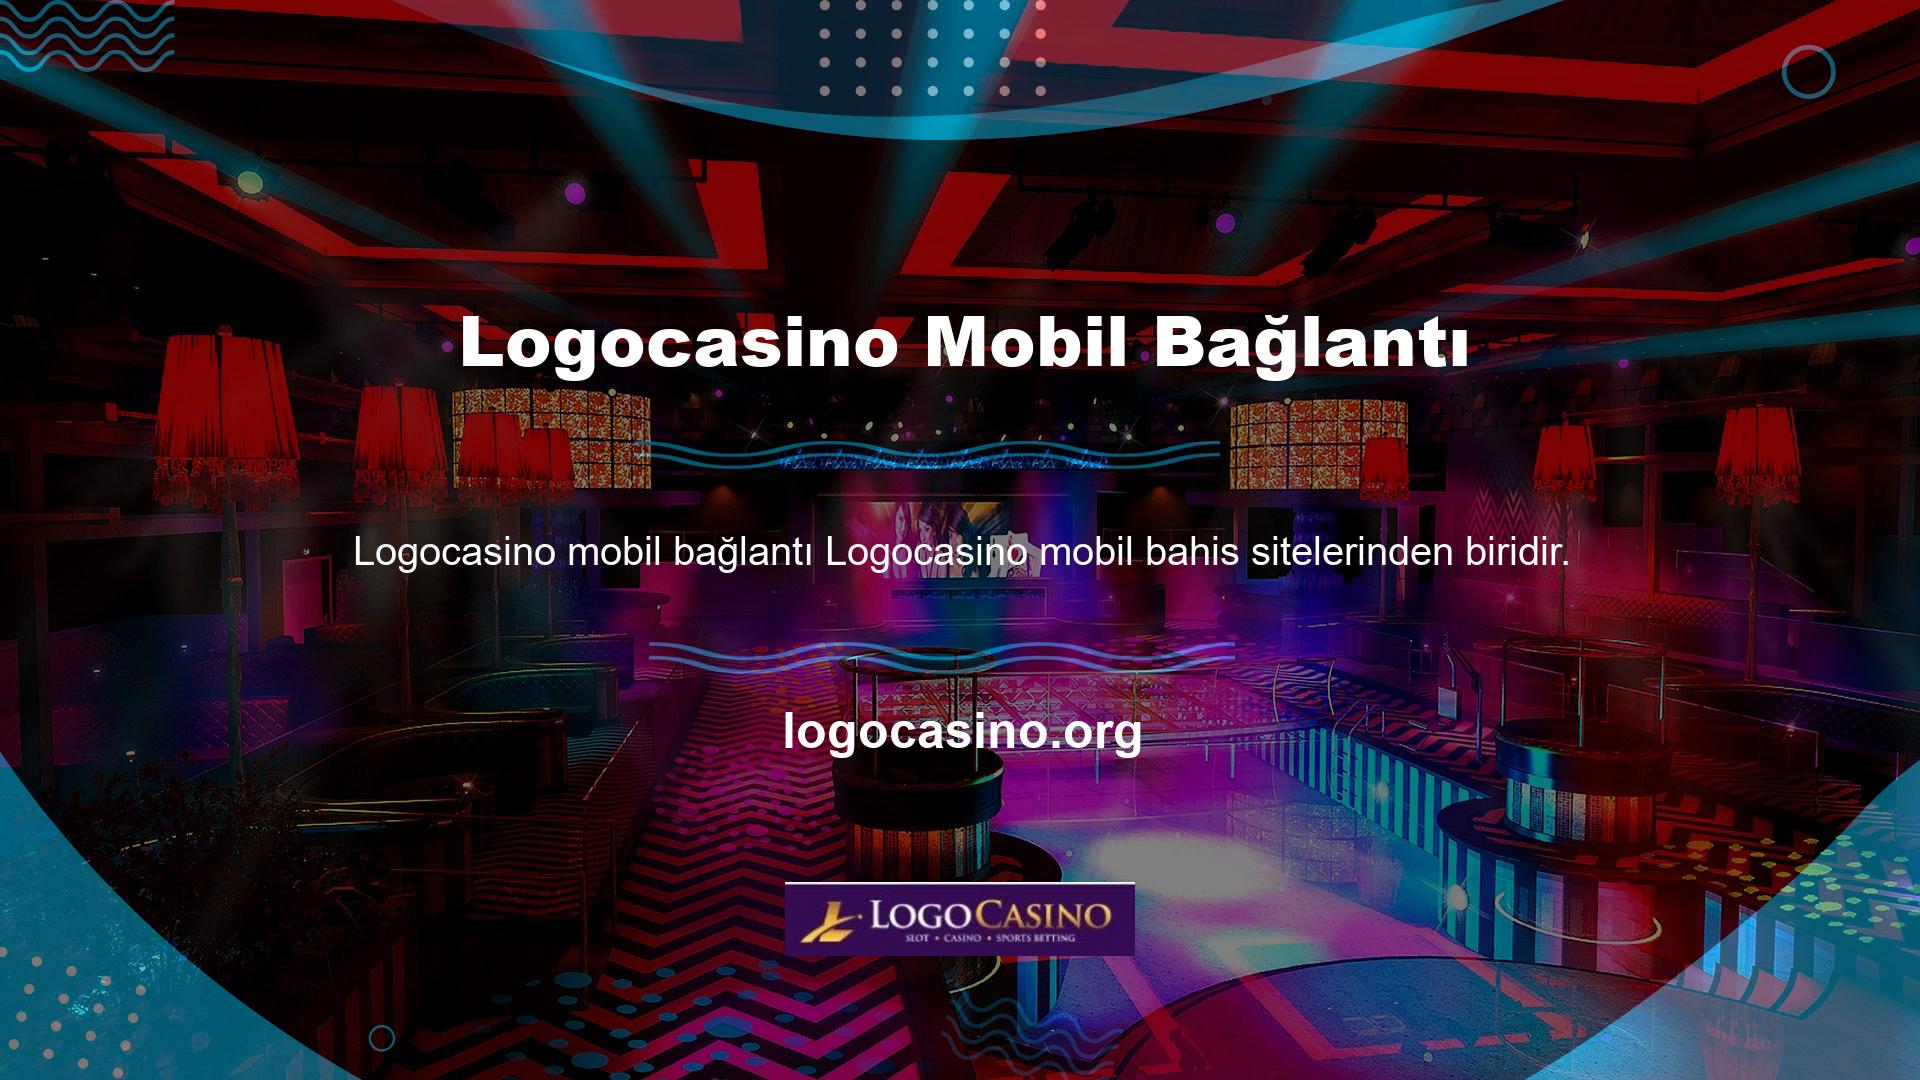 Logocasino, mobil cihazınızdan giriş yaparak tüm bahis oyunlarınızı mobil cihazınızda oynamanıza olanak sağlar